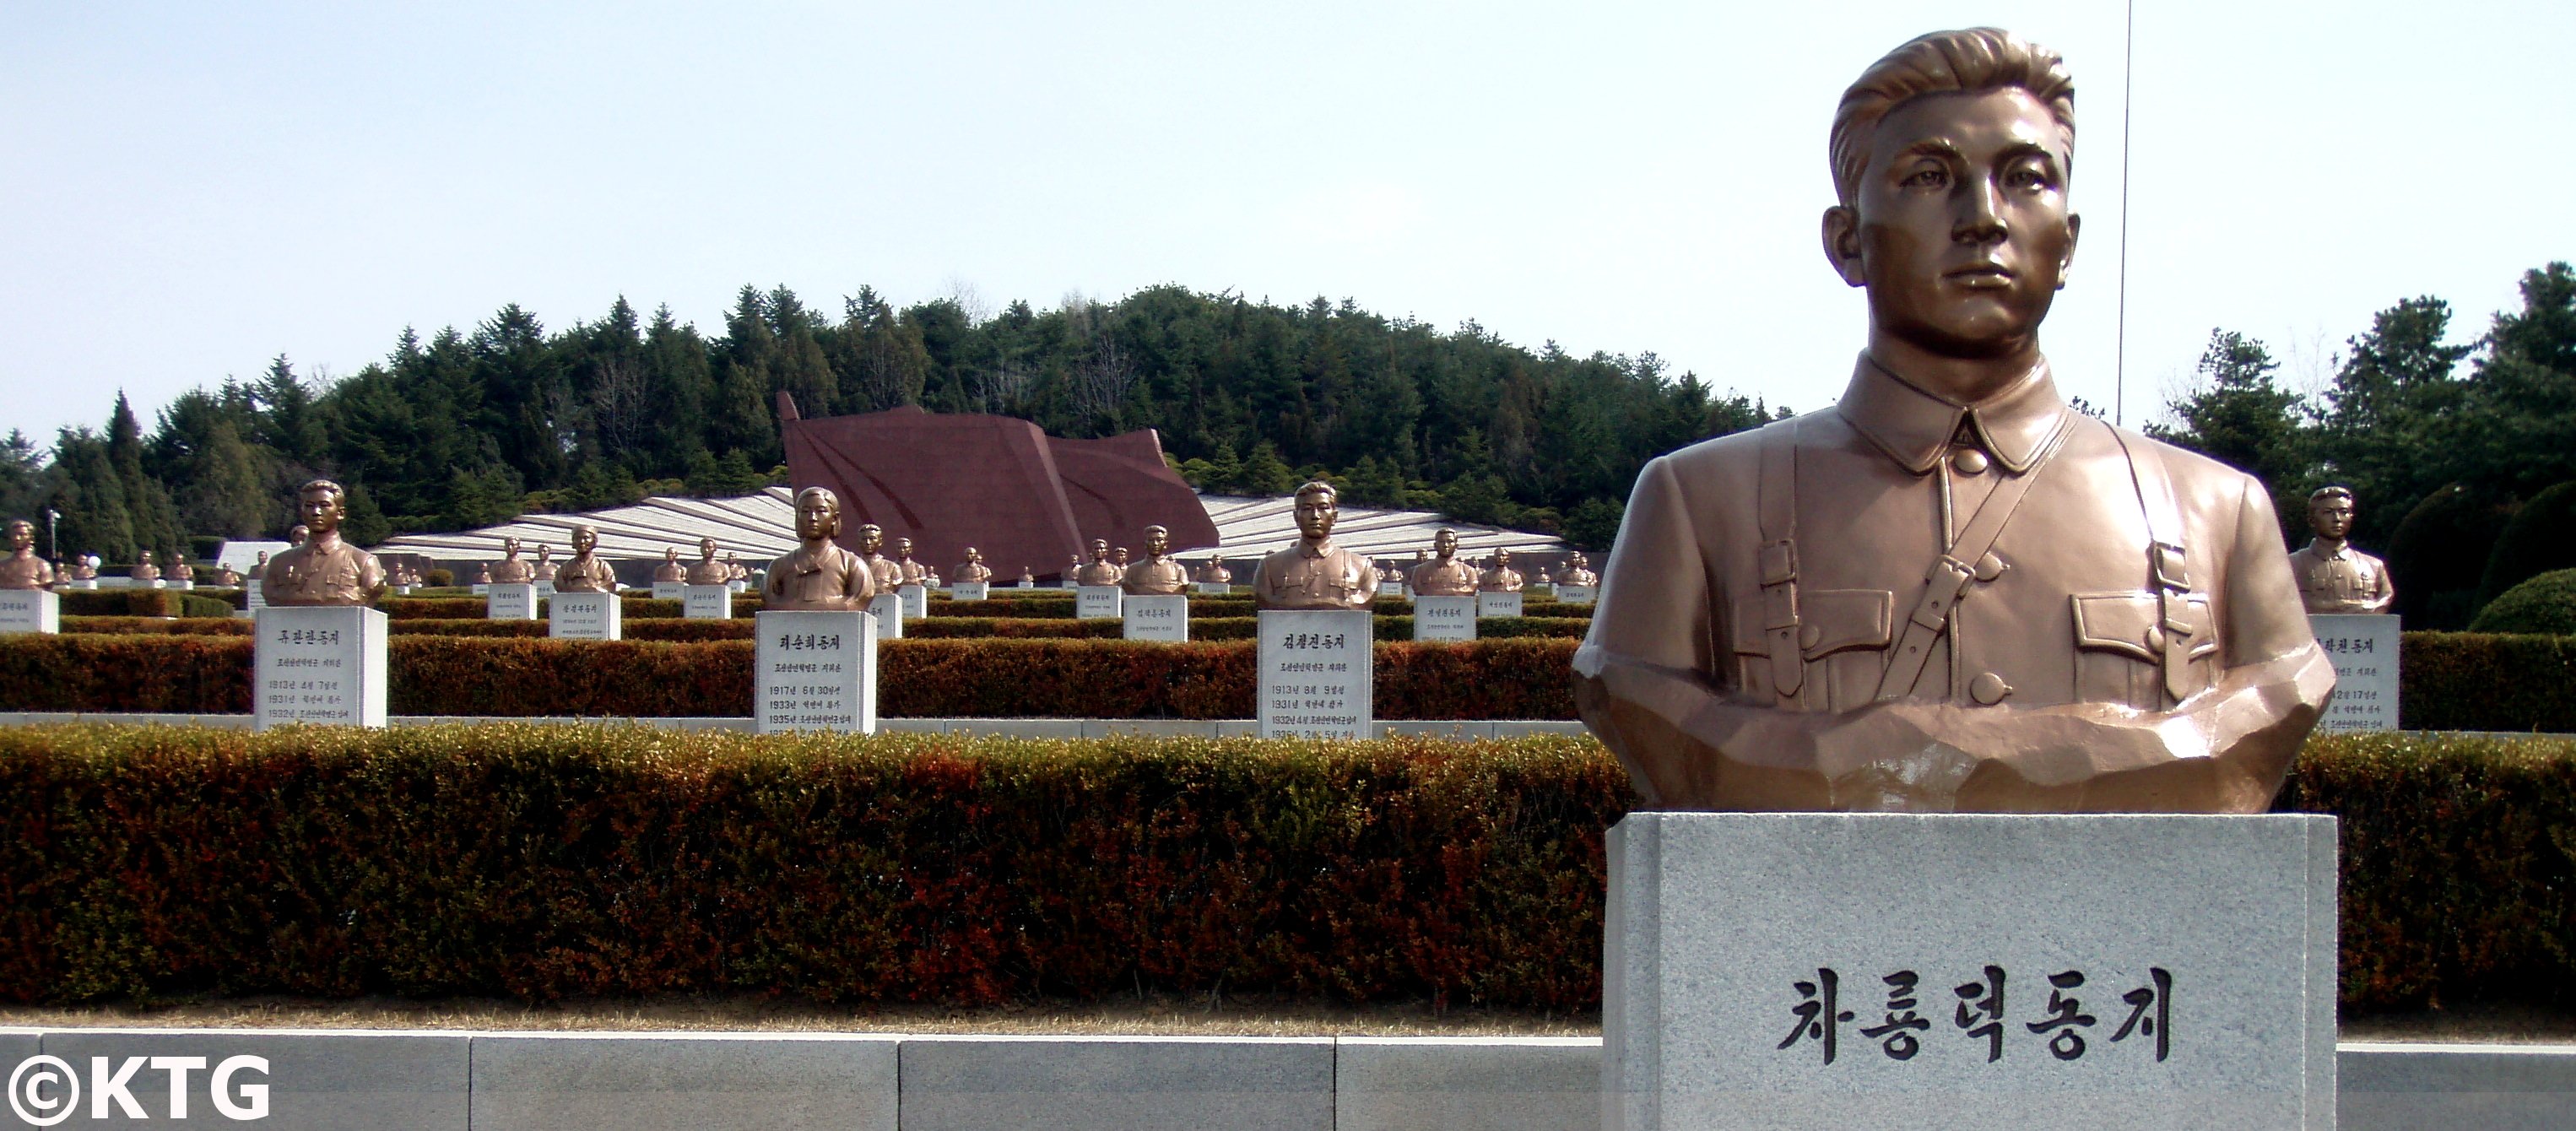 El Cementerio de los Mártires Revolucionarios en Pyongyang la capital de Corea del Norte (Repúblico Popular Democrática de Corea). Viaje organizado por KTG